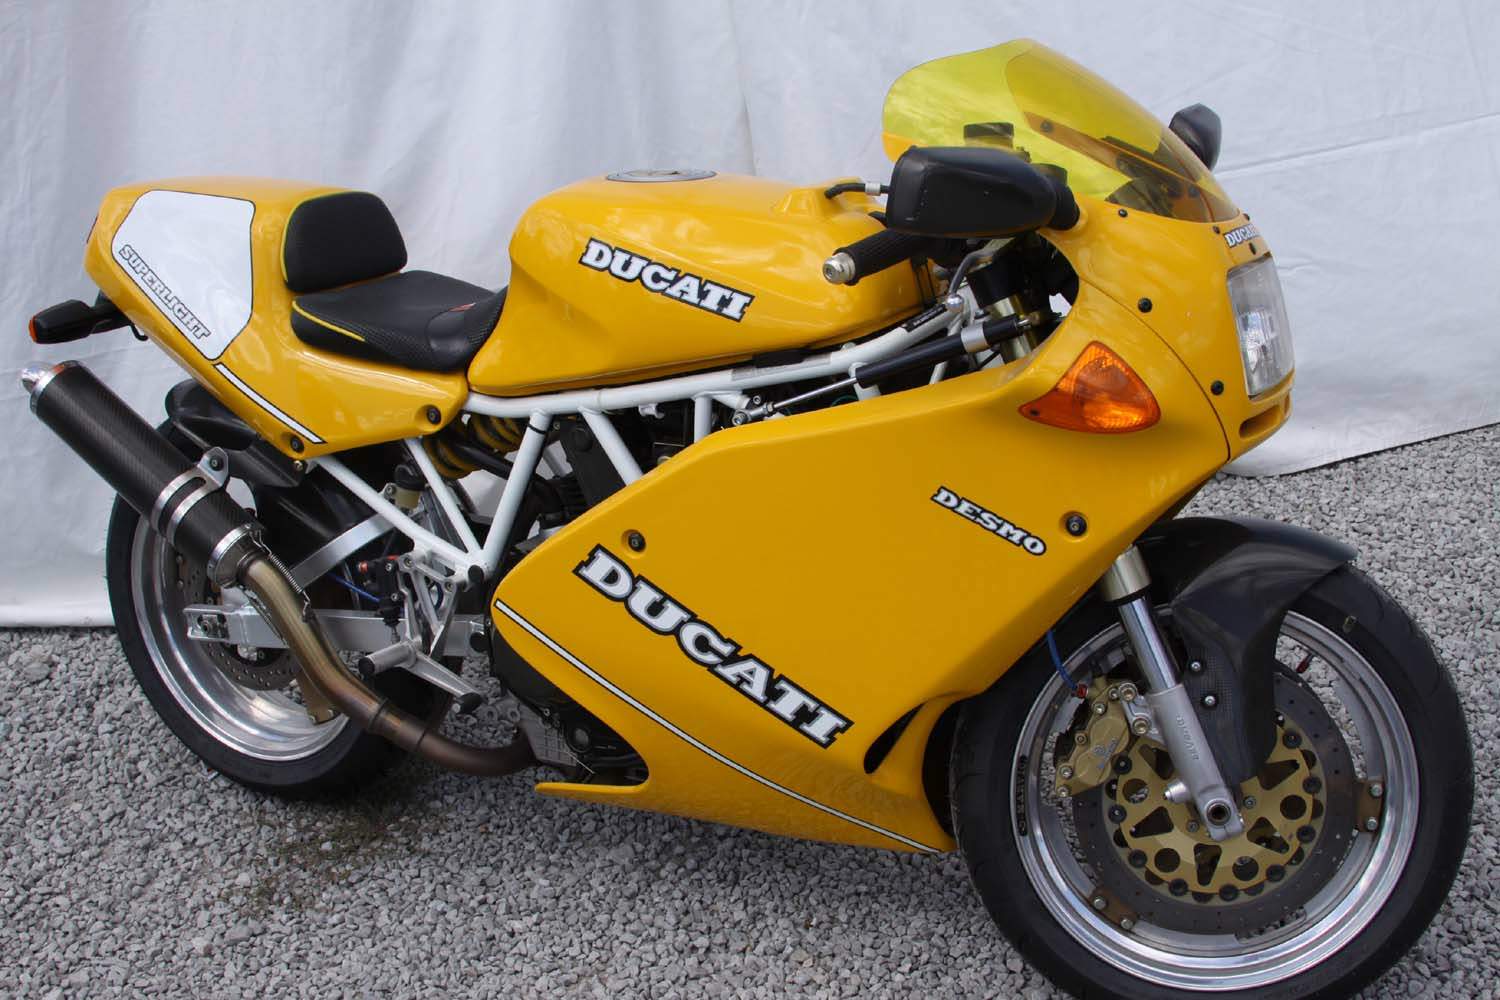 , Superligero Ducati 900 SL